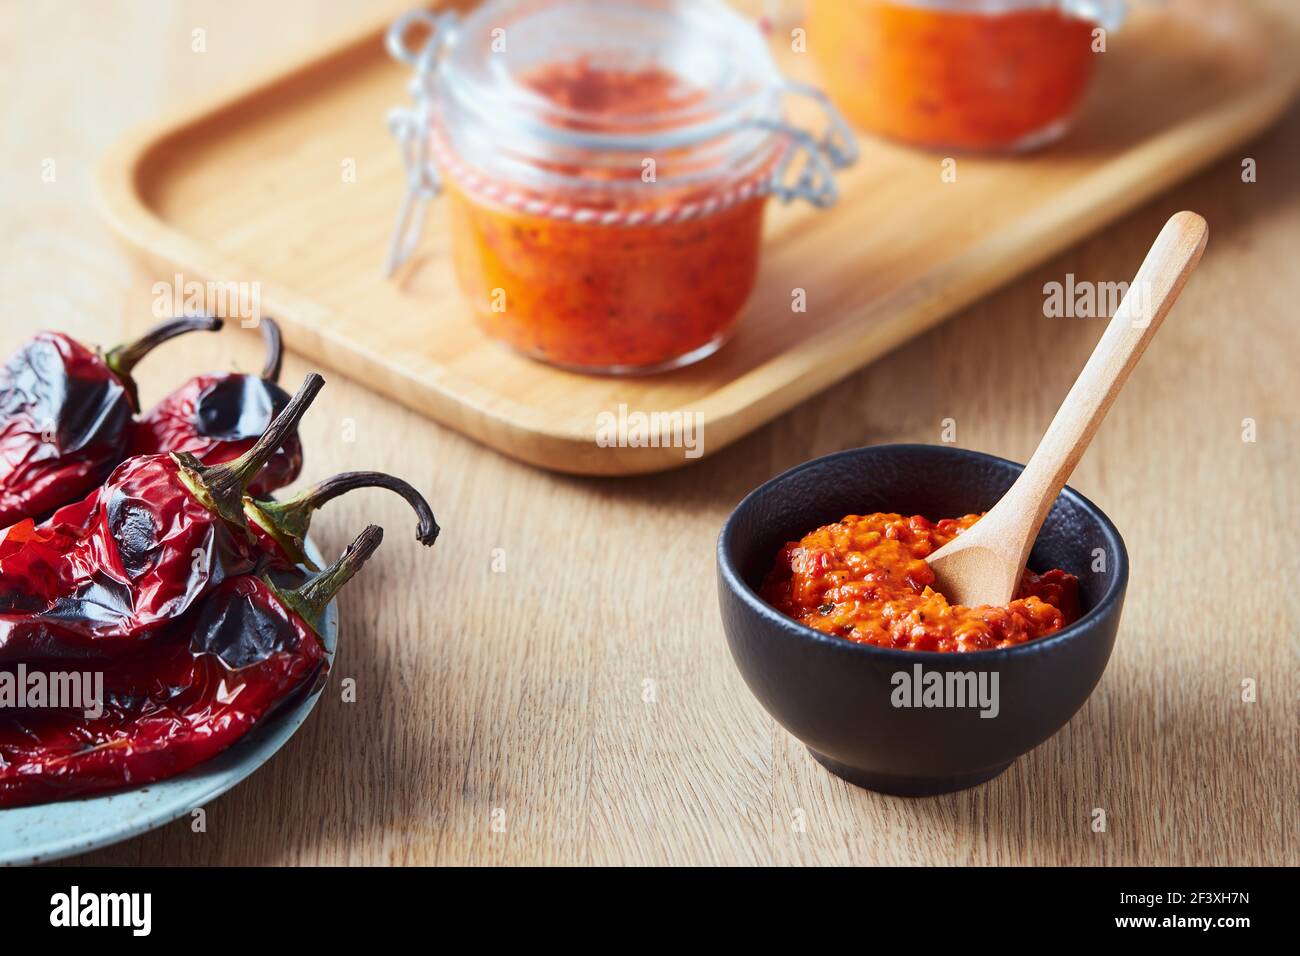 Salsa de pimienta roja asada (Ajvar) en un tazón pequeño Foto de stock